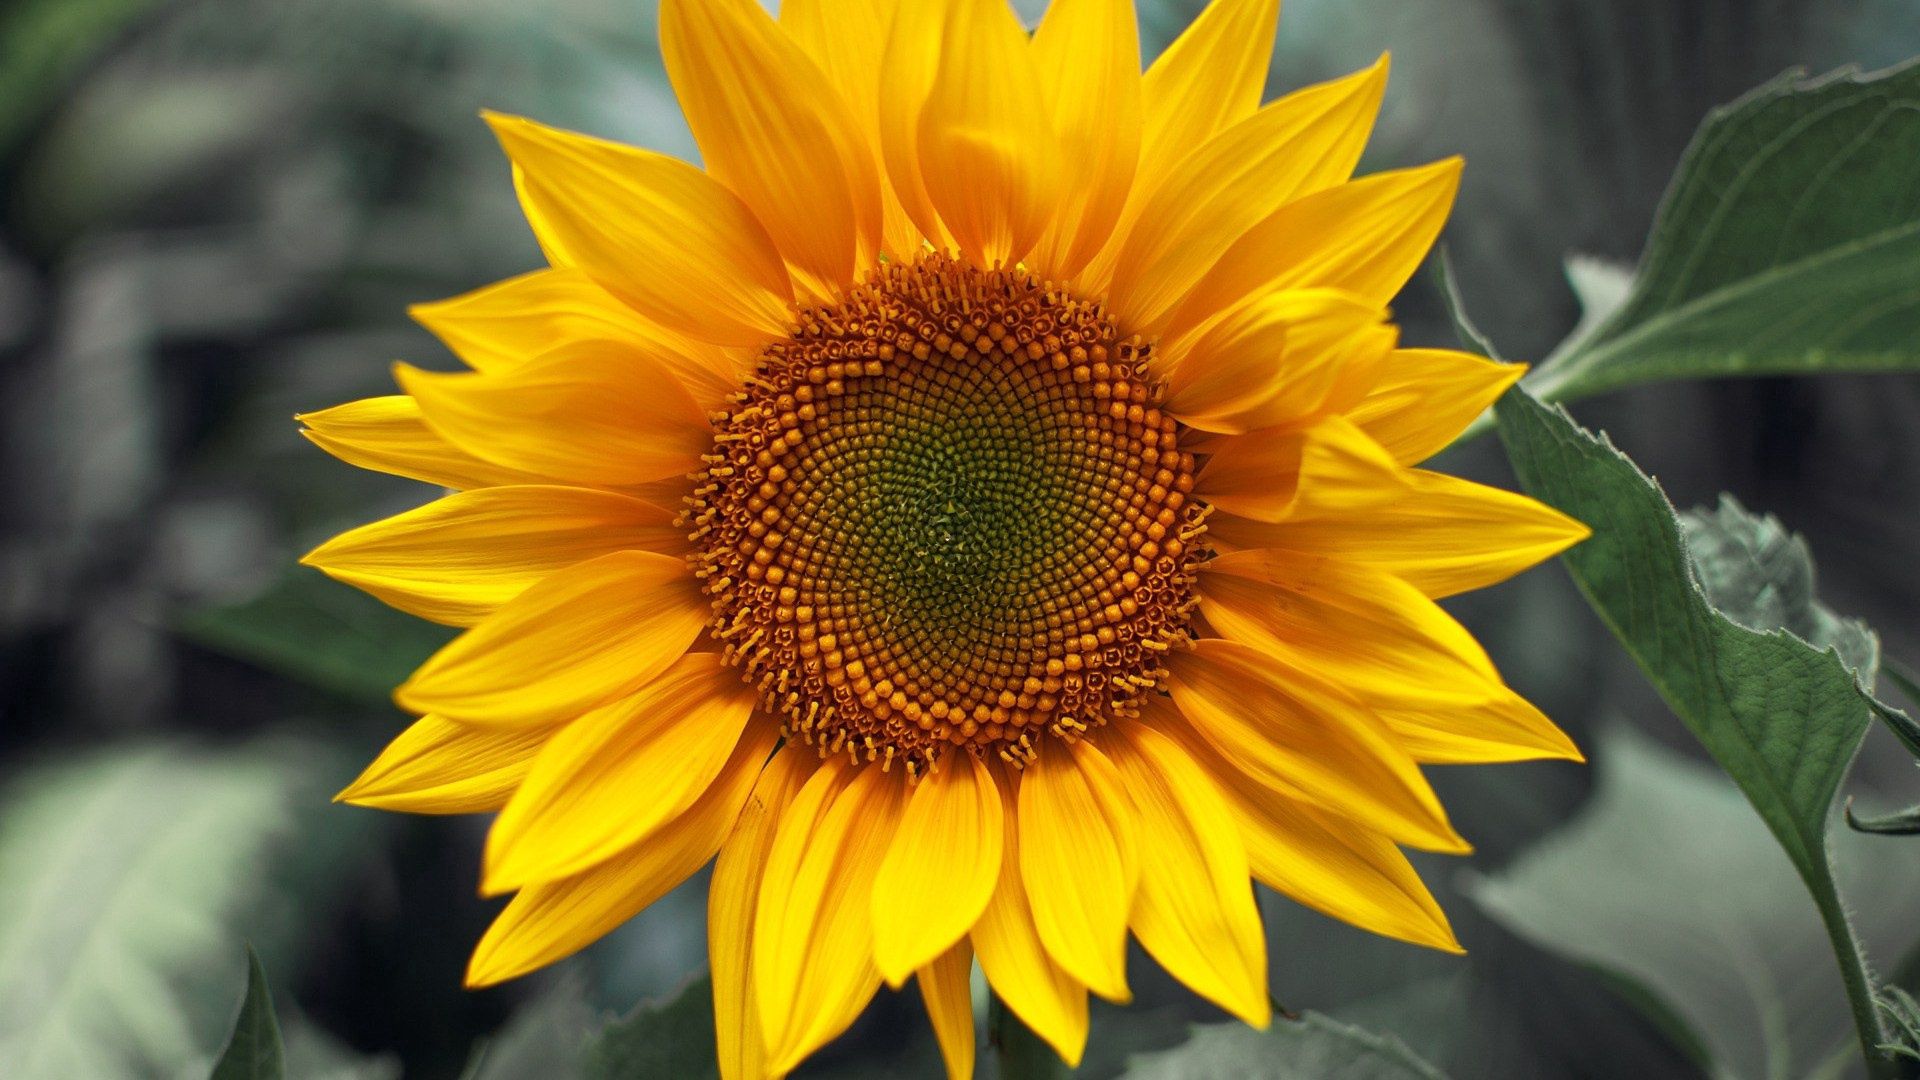 8k Sunflower Images